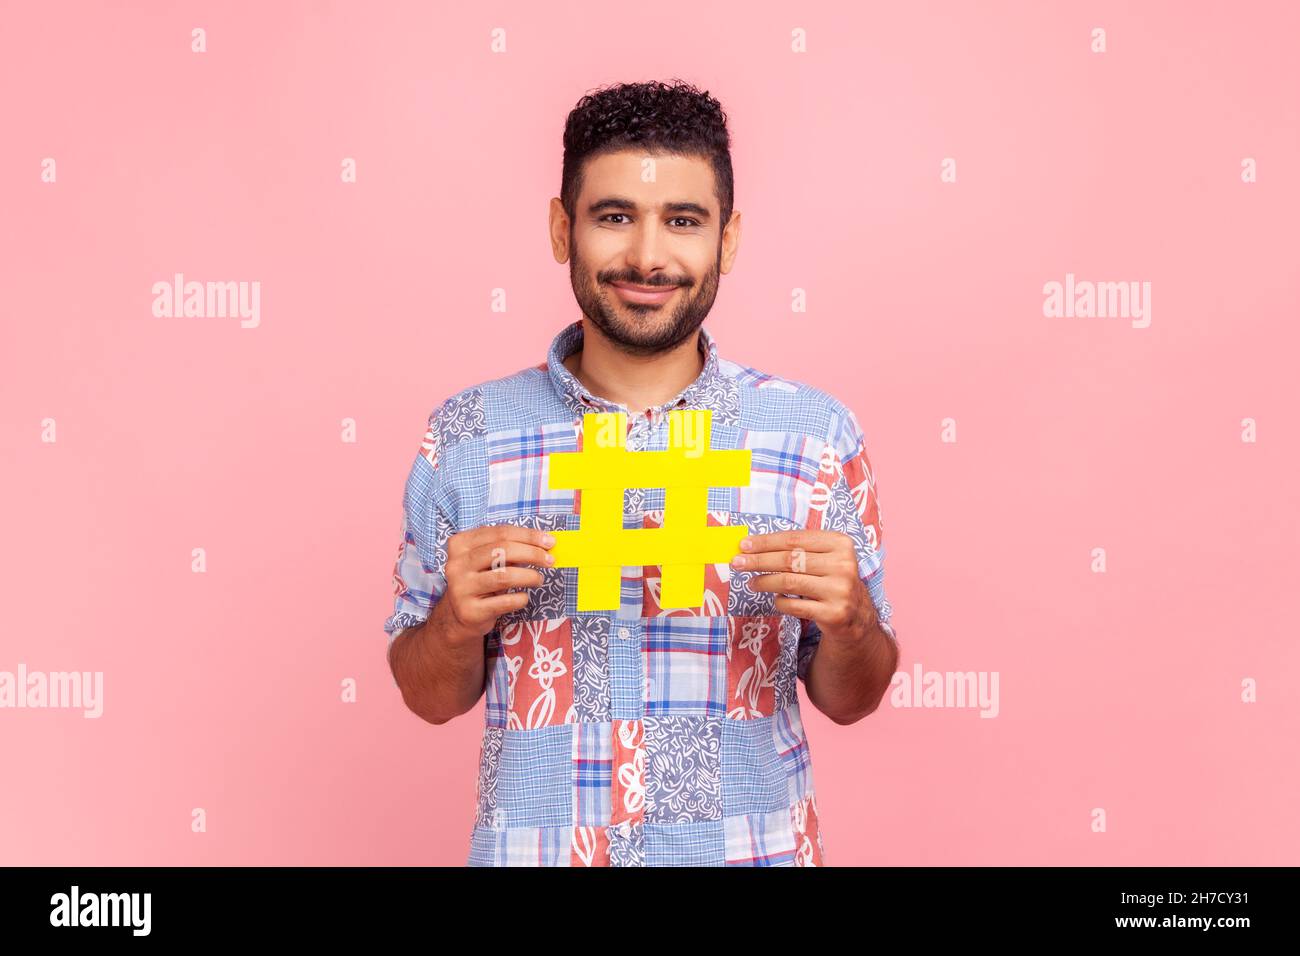 Popularité dans les médias sociaux.Portrait d'un homme heureux aux cheveux foncés avec une barbe dans une chemise décontractée tenant un grand signe de hashtag jaune, regardant l'appareil photo.Studio d'intérieur isolé sur fond rose. Banque D'Images